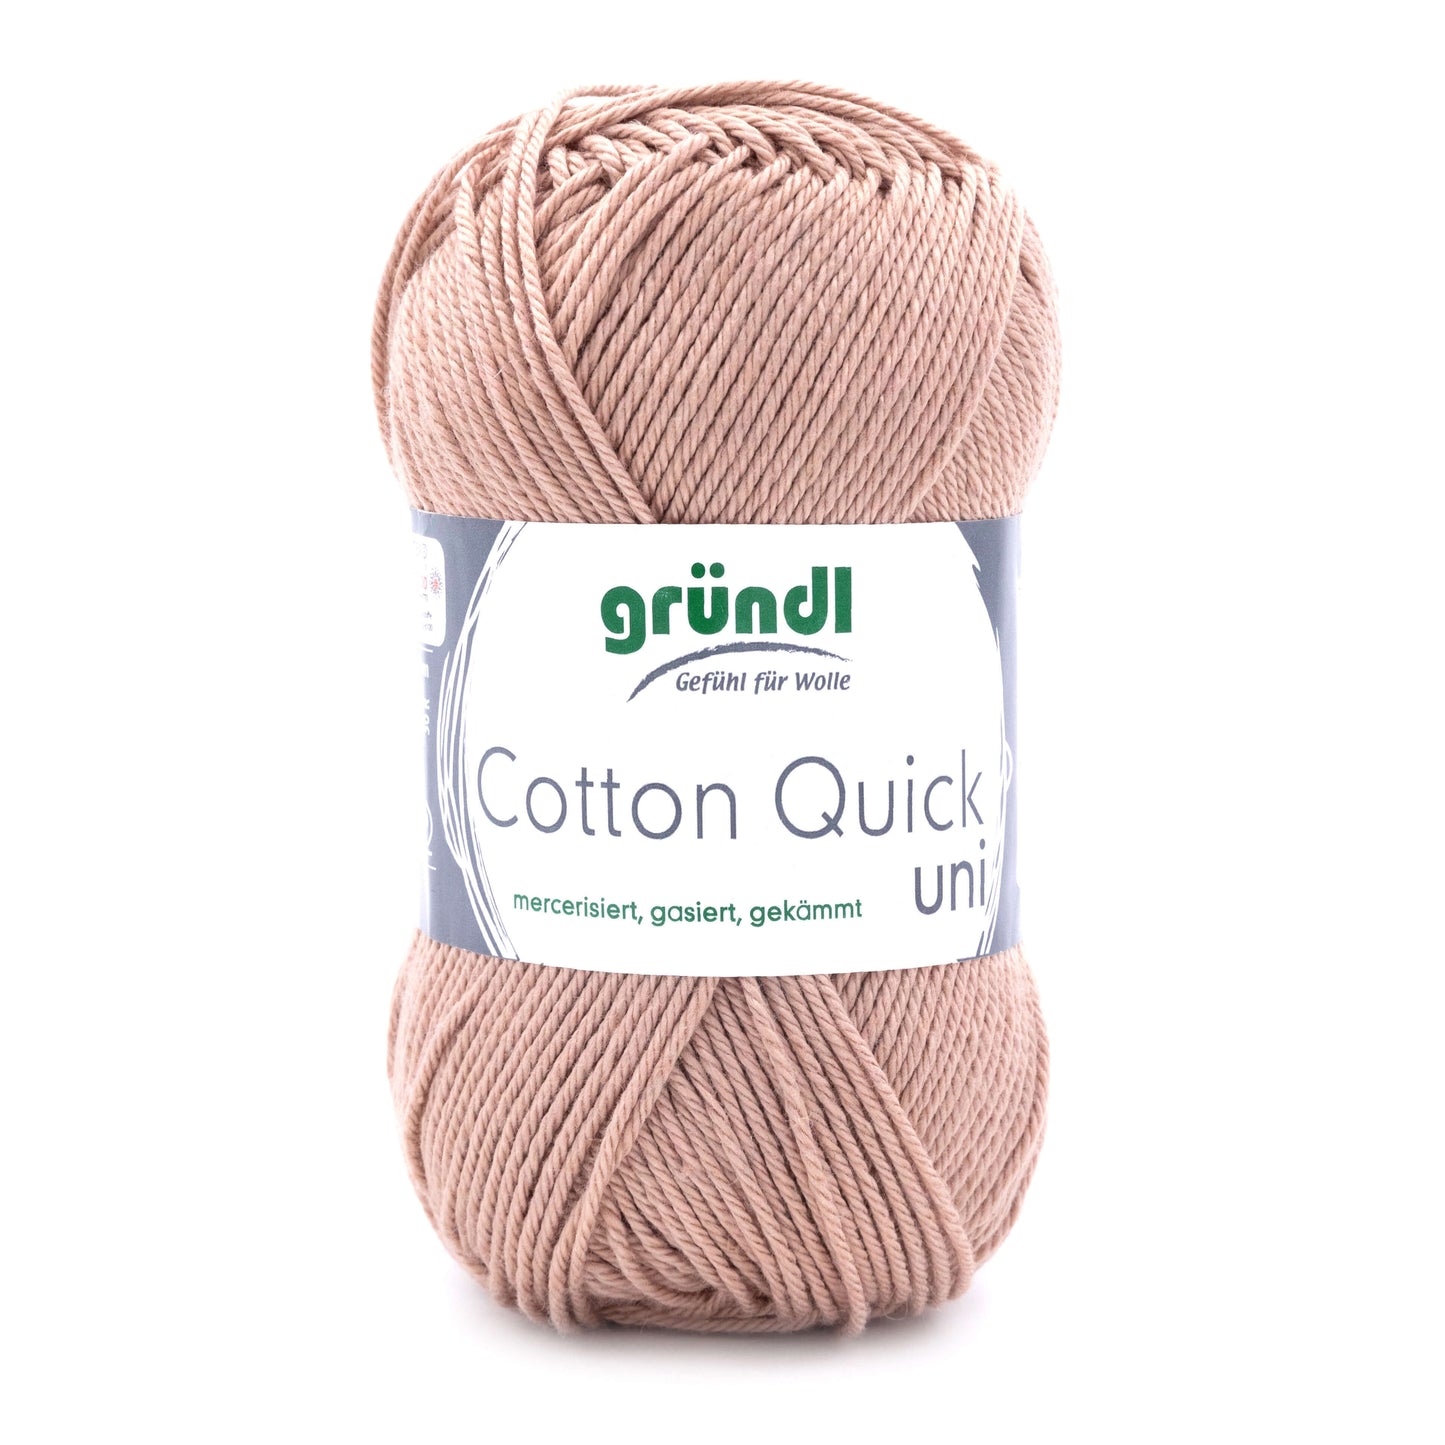 Gründl Cotton Quick uni 100 % Baumwolle (mercerisiert, gasiert, gekämmt)